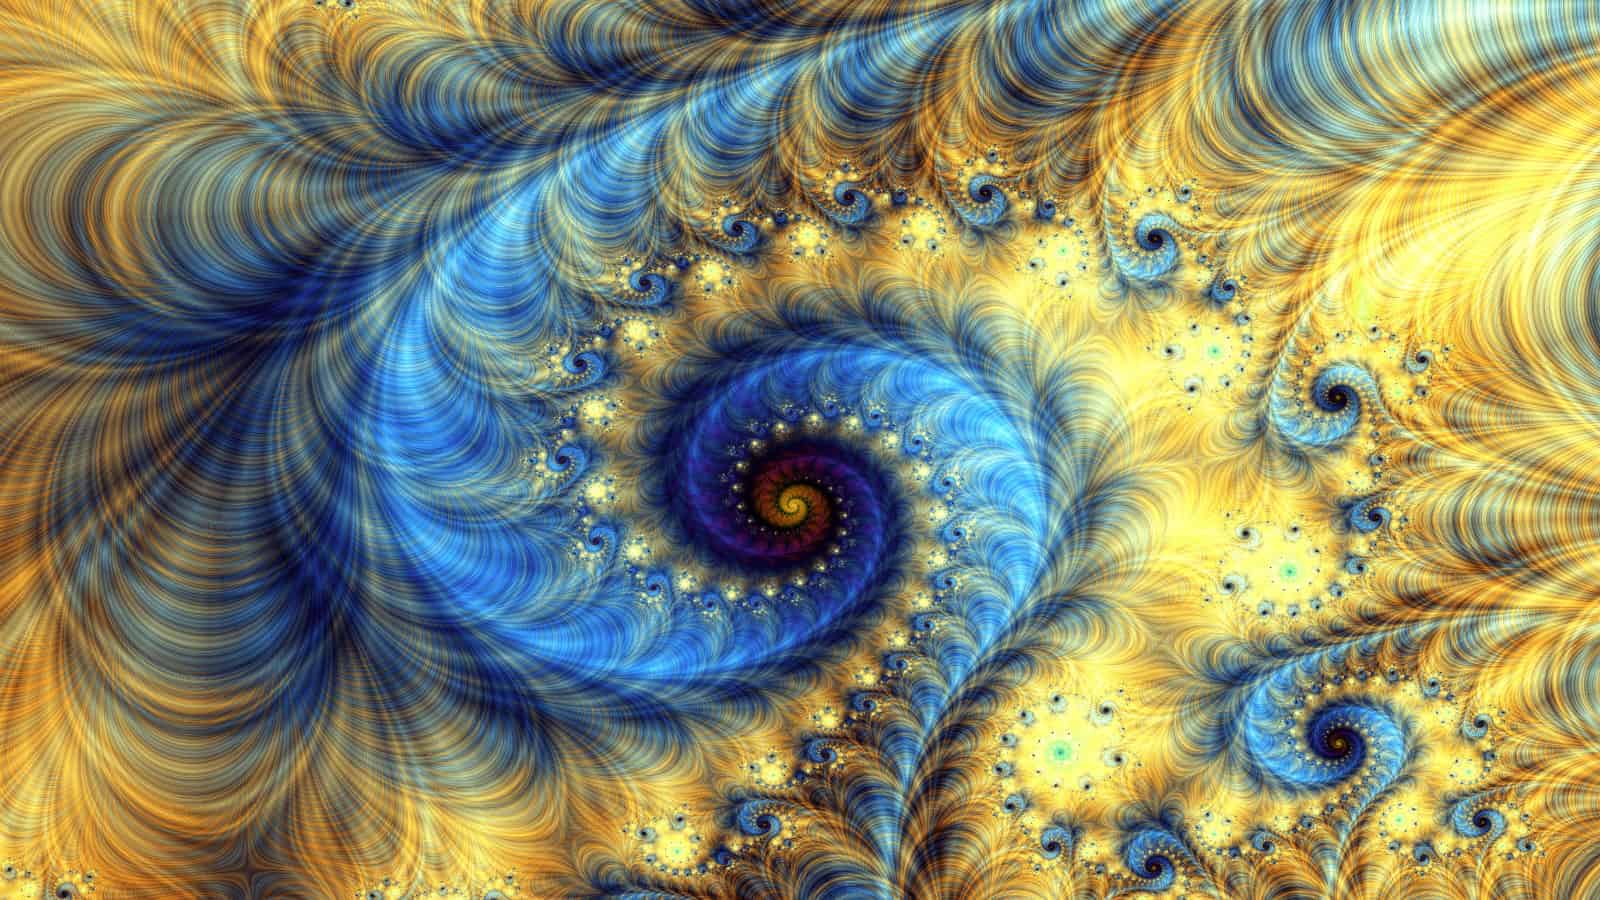 Seeing patterns fractal